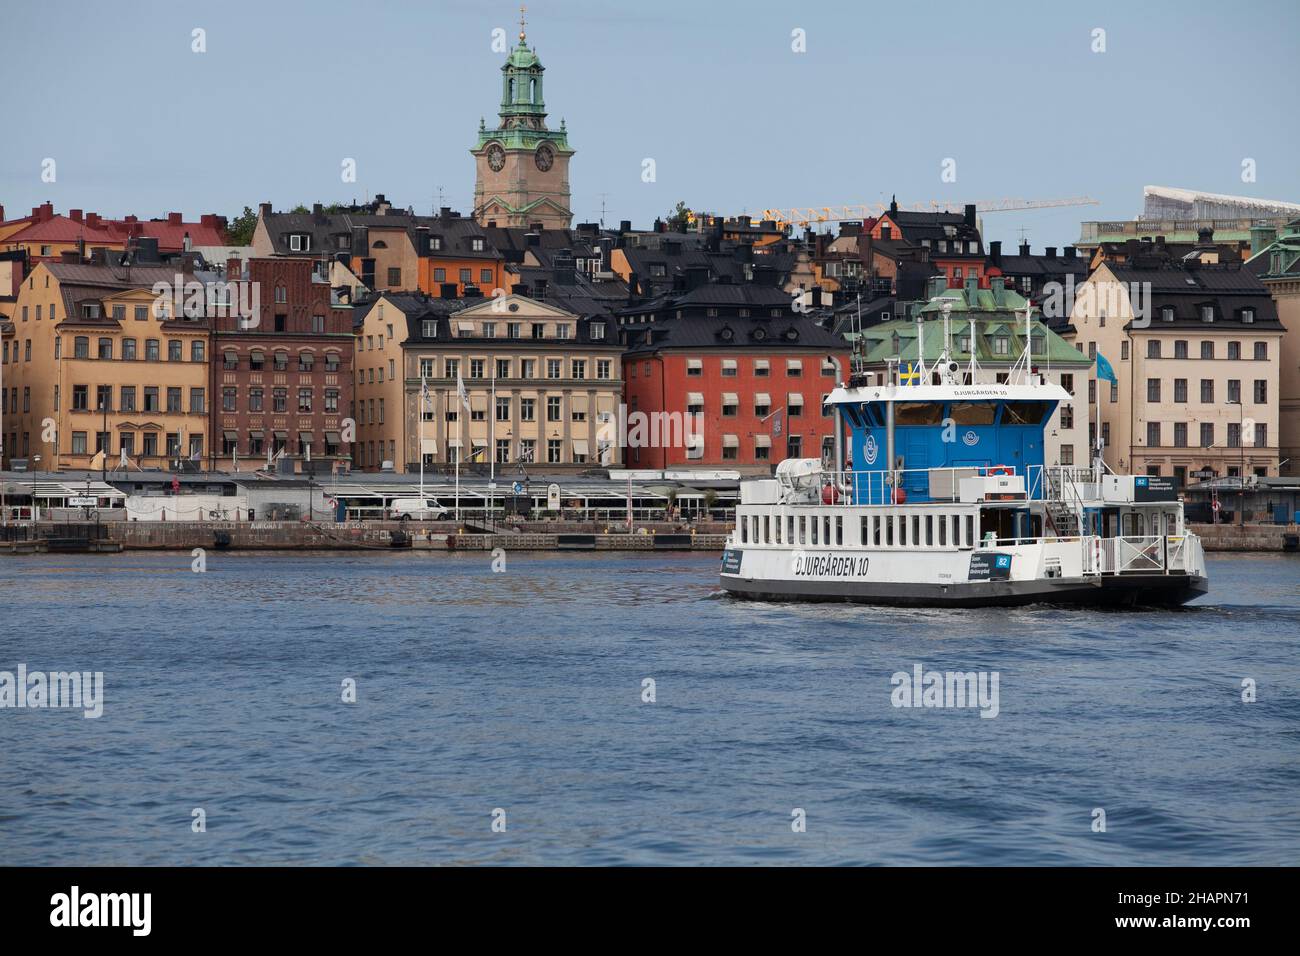 Stockholm, Schweden - 12. August 2020: Die öffentliche Pendlerfähre Djurgården Ferry oder Djurgårdsfärjan auf Schwedisch. Auf dem´s Weg von Djurgården nach t Stockfoto